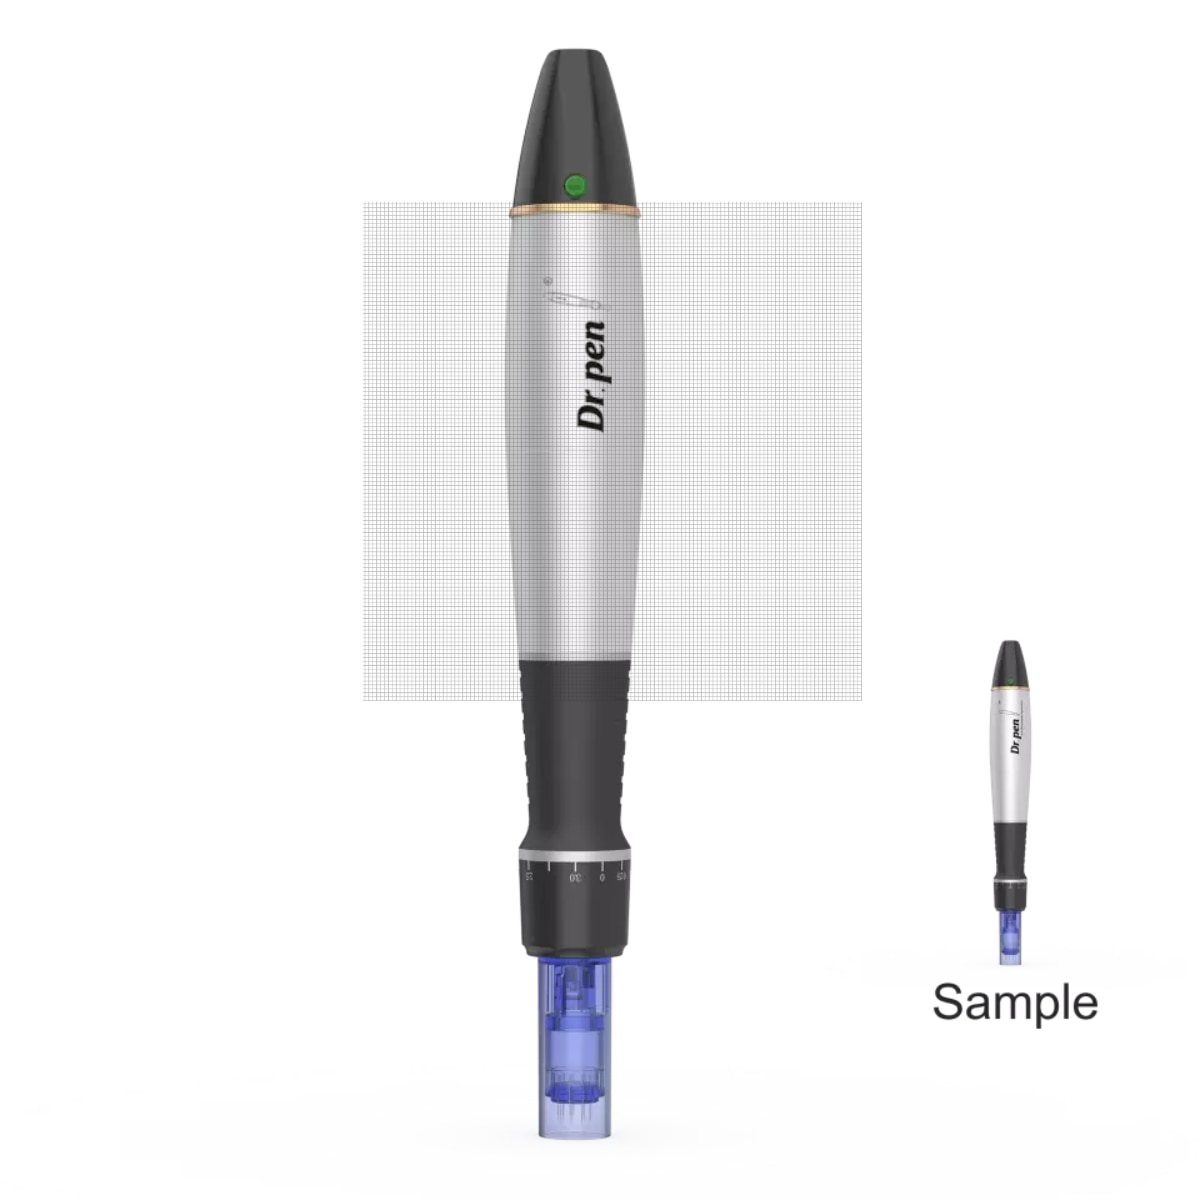 Dr.pen A1-W derma pen needle dermapen wireless micro needle pen for beauty personal care